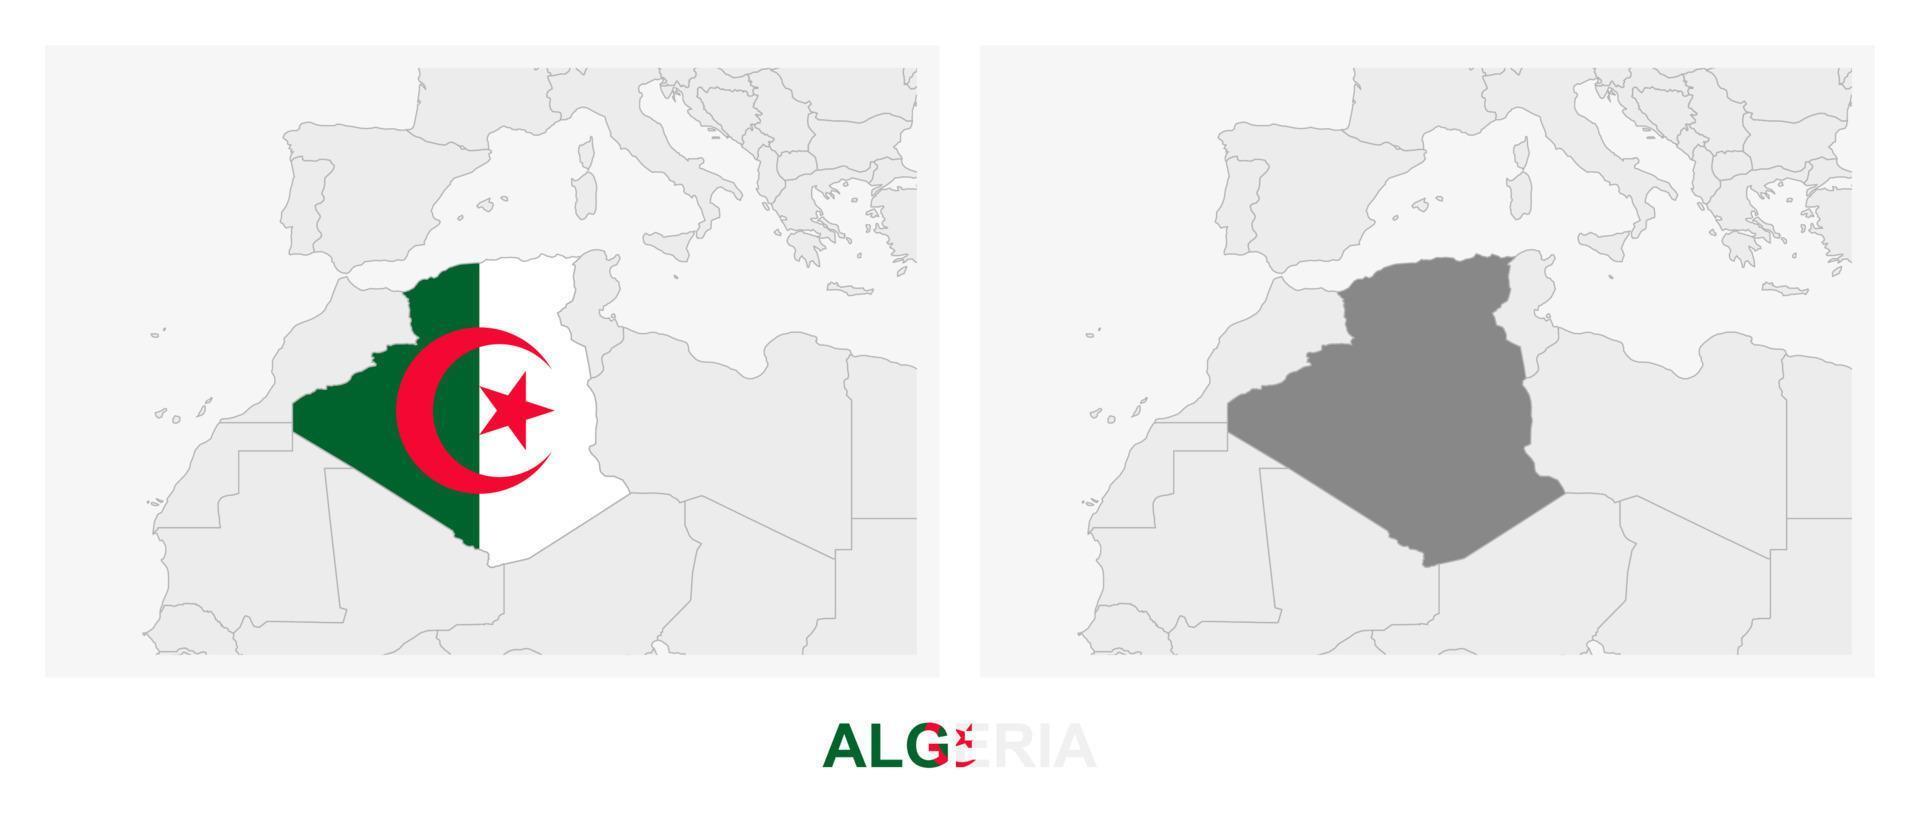 deux versions de la carte de l'algérie, avec le drapeau de l'algérie et surlignées en gris foncé. vecteur